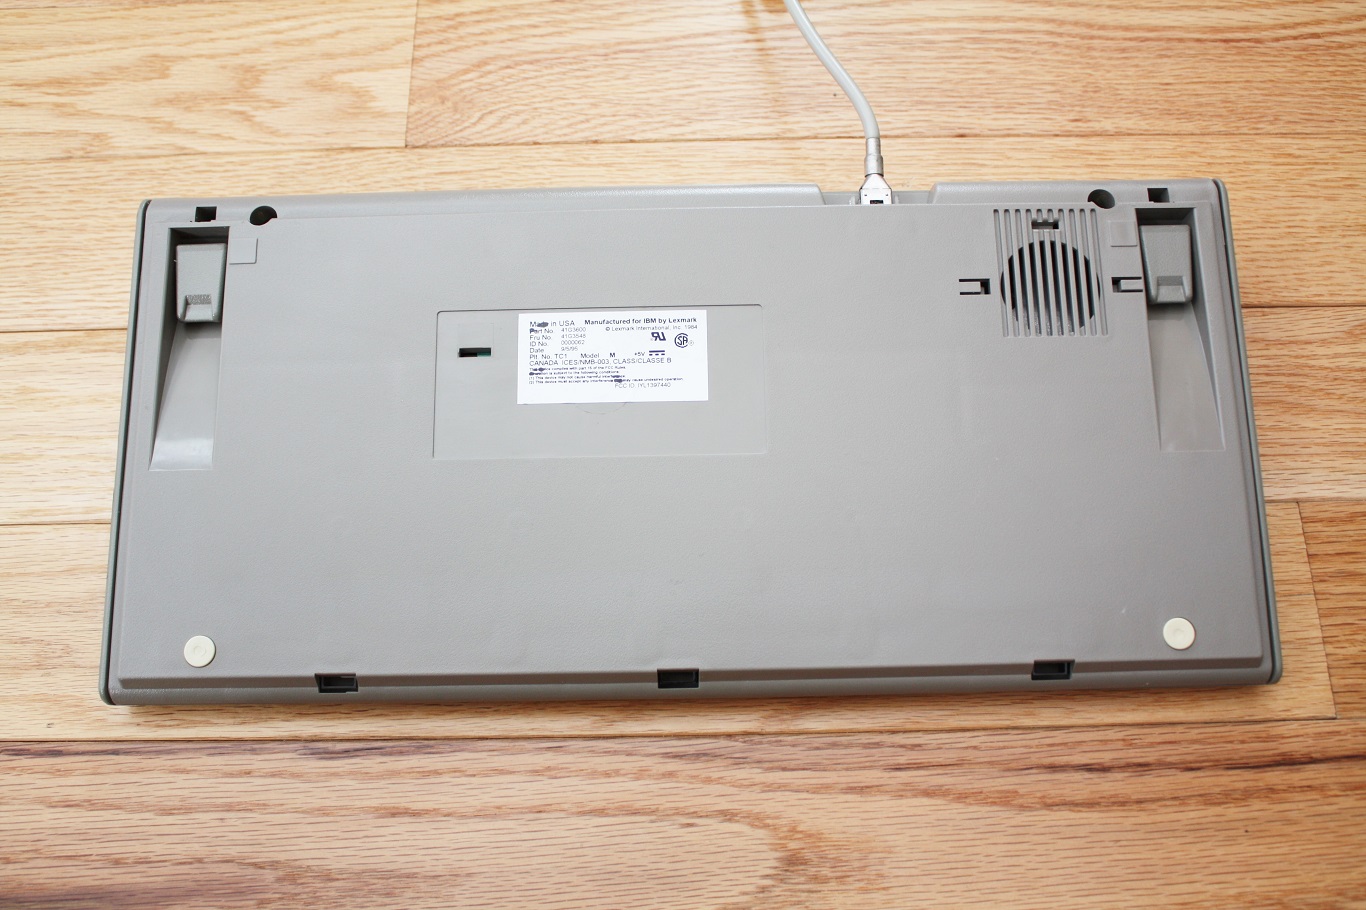 IBM 41G3600 - back (no cover)